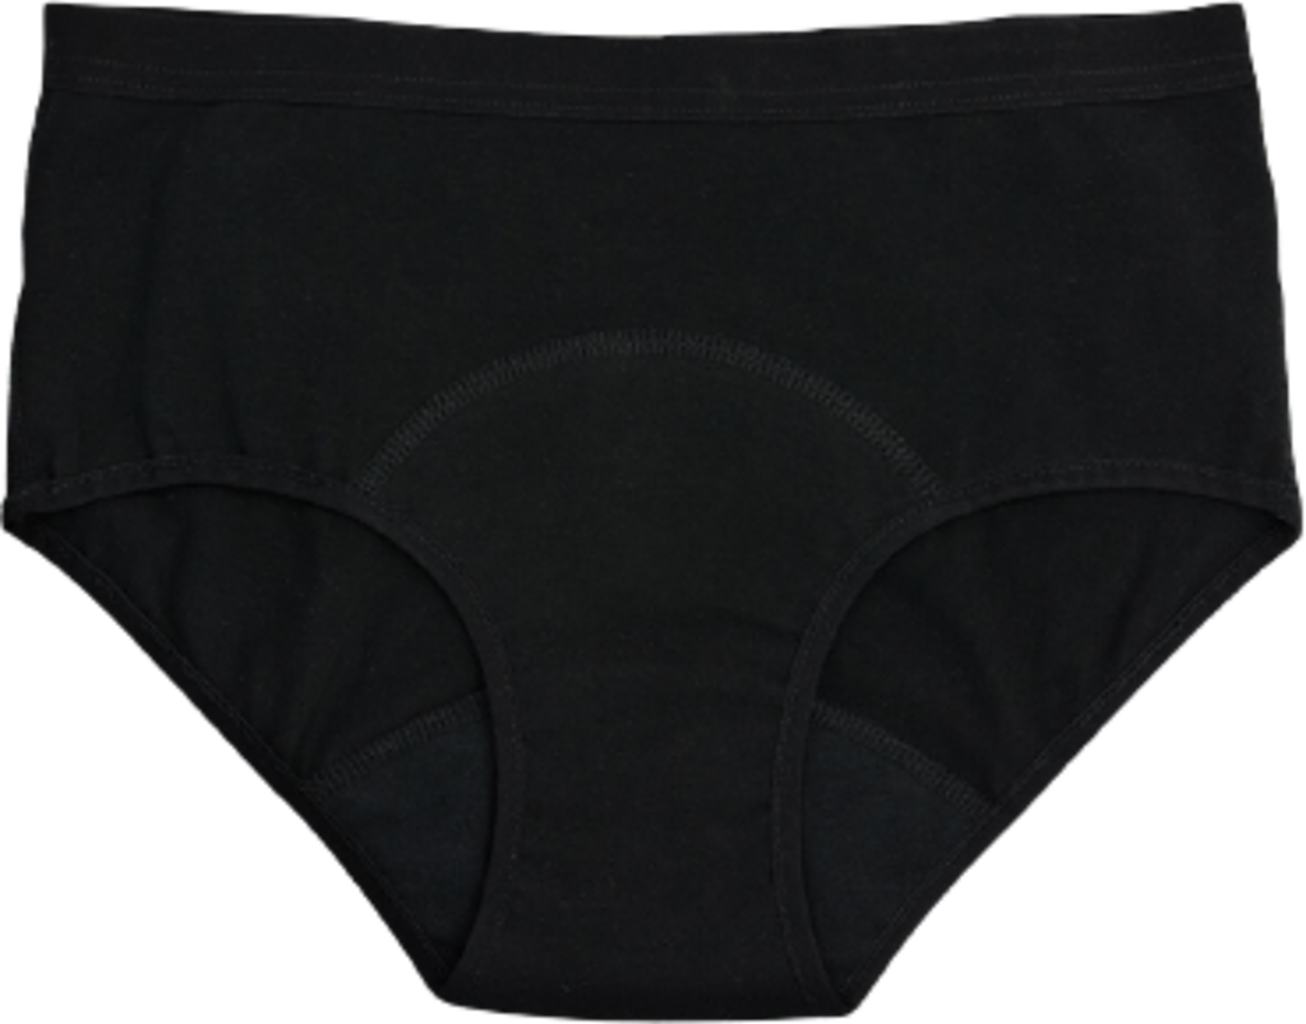 Imse Period Underwear Light Flow - Black - Ecco Verde Online Shop